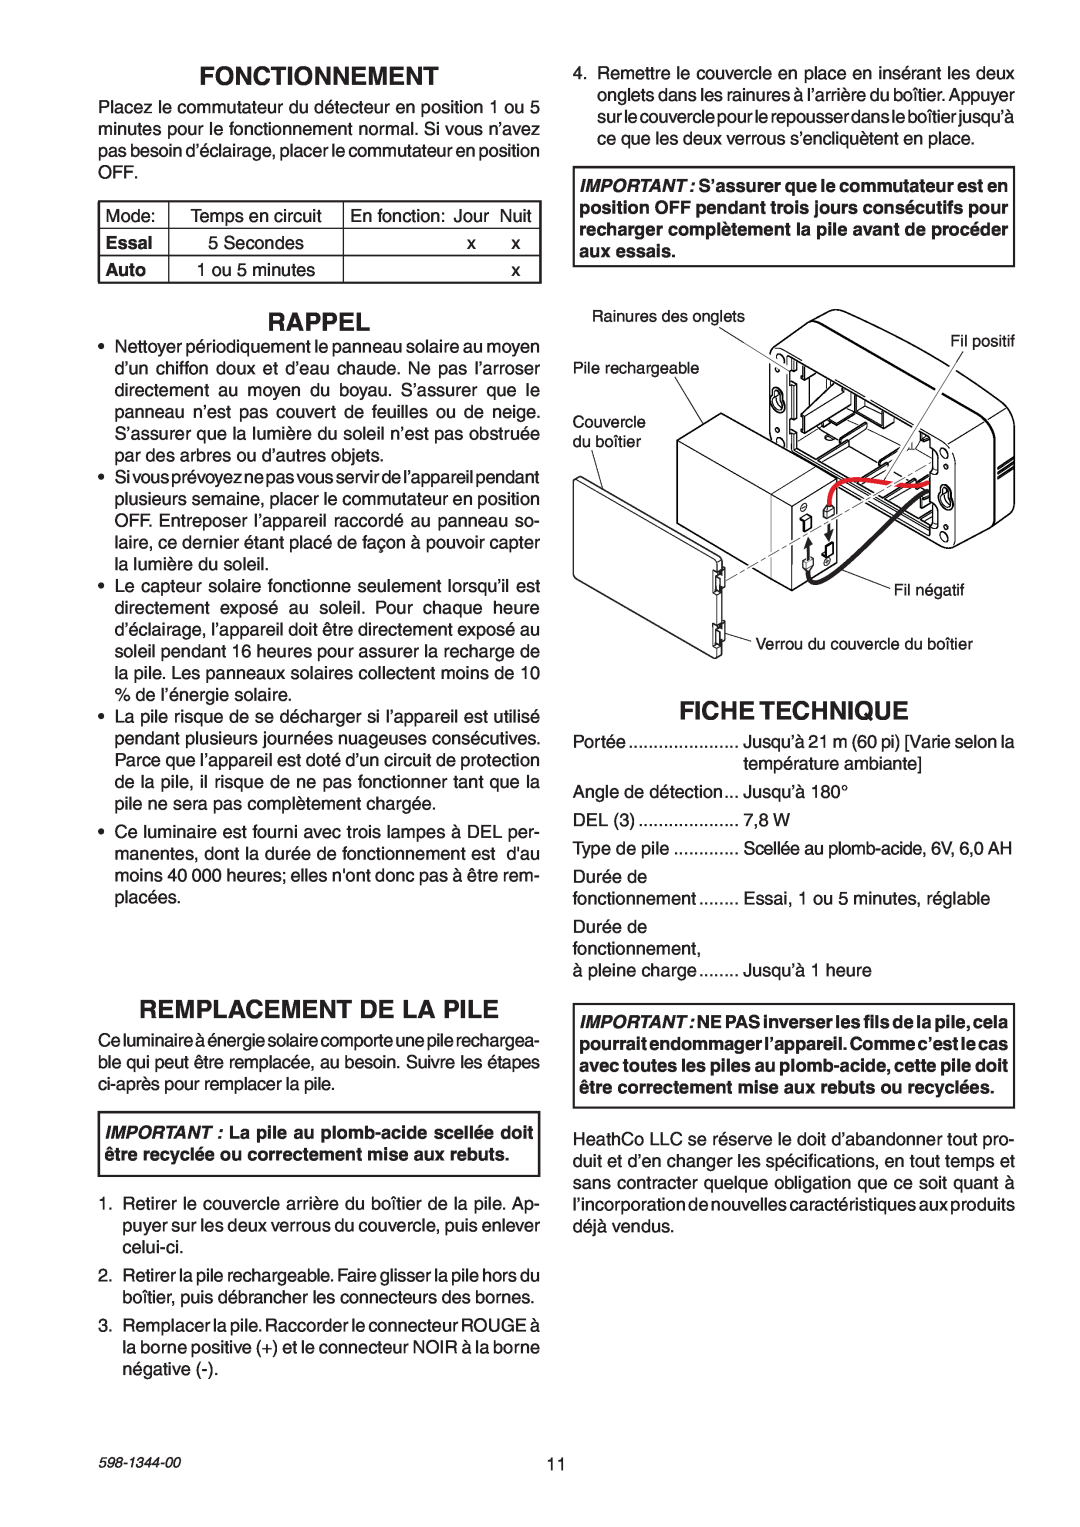 Heath Zenith 7101 manual Fonctionnement, Rappel, Remplacement De La Pile, Fiche Technique, Essal, Auto 